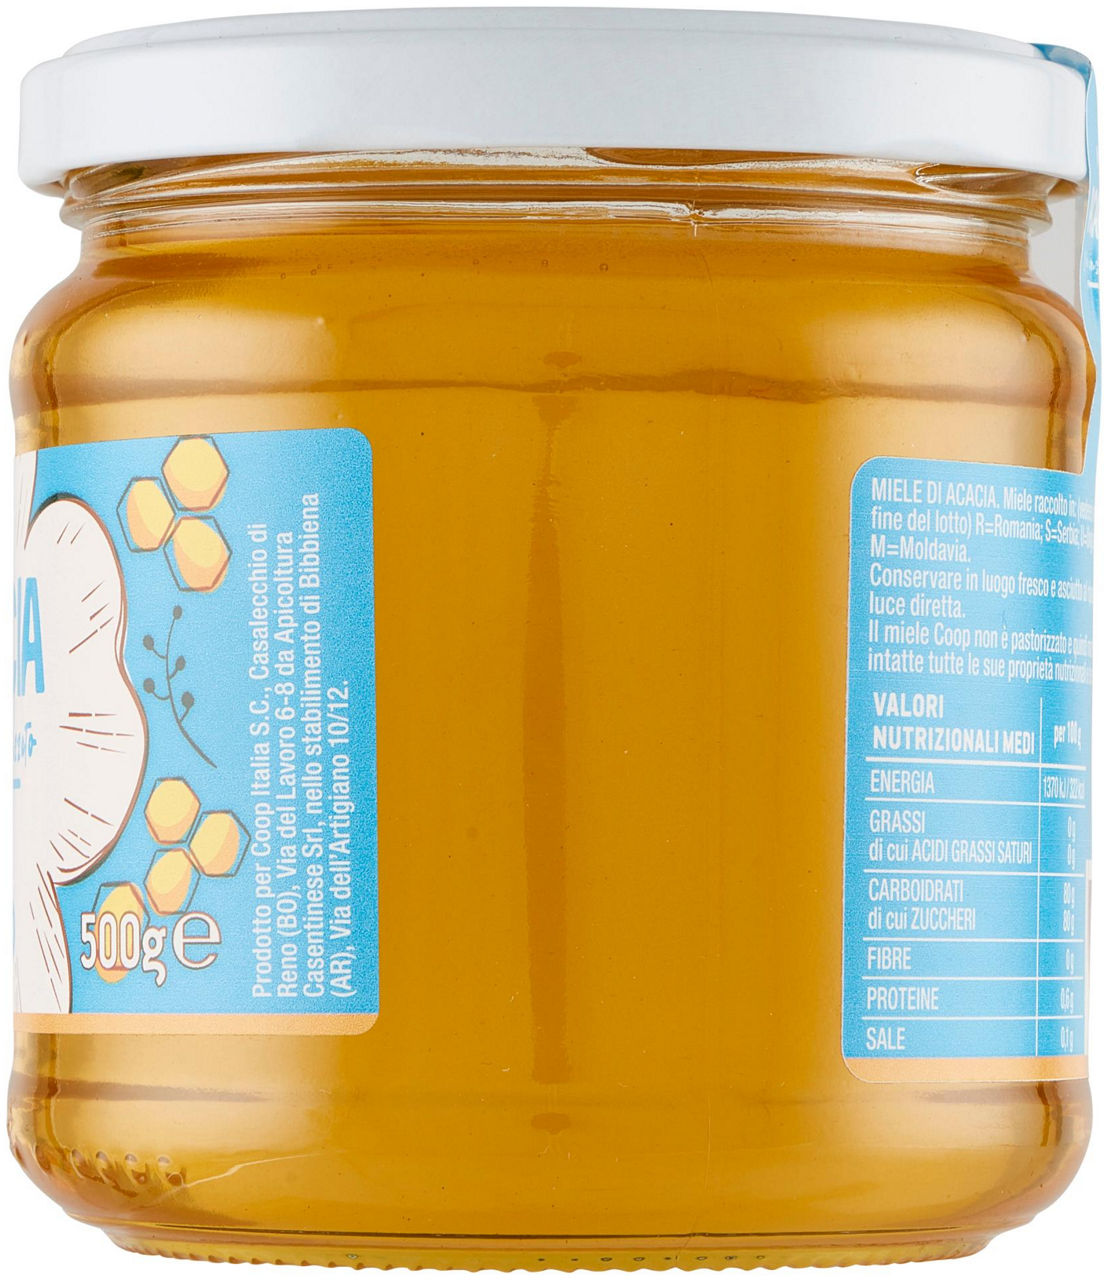 Miele di acacia 500 g - 6